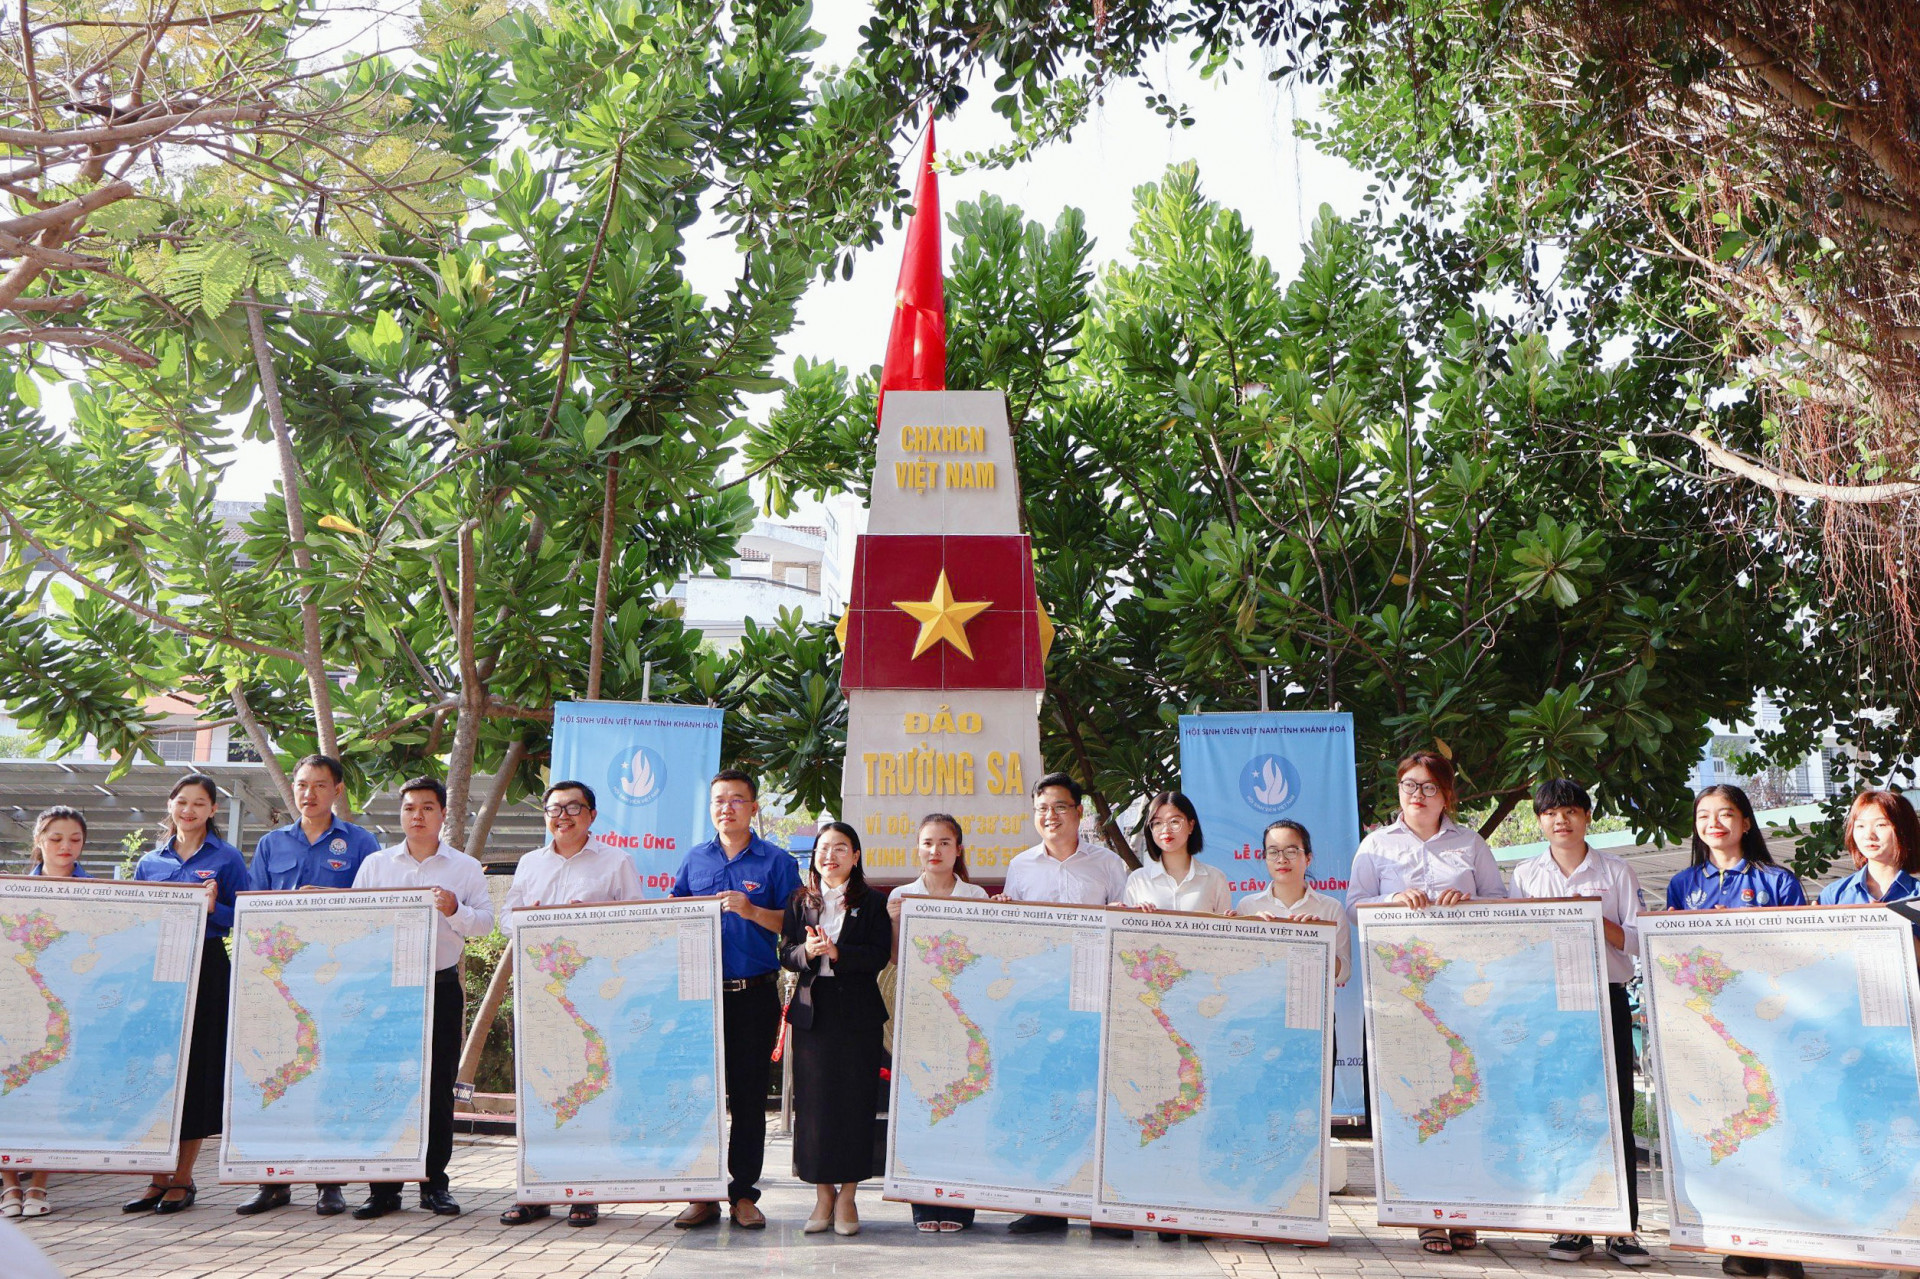 Tỉnh đoàn - Hội Sinh viên Việt Nam tỉnh trao tặng bản đồ Việt Nam cho đại diện đoàn trường, hội sinh viên các trường đại học, cao đẳng.